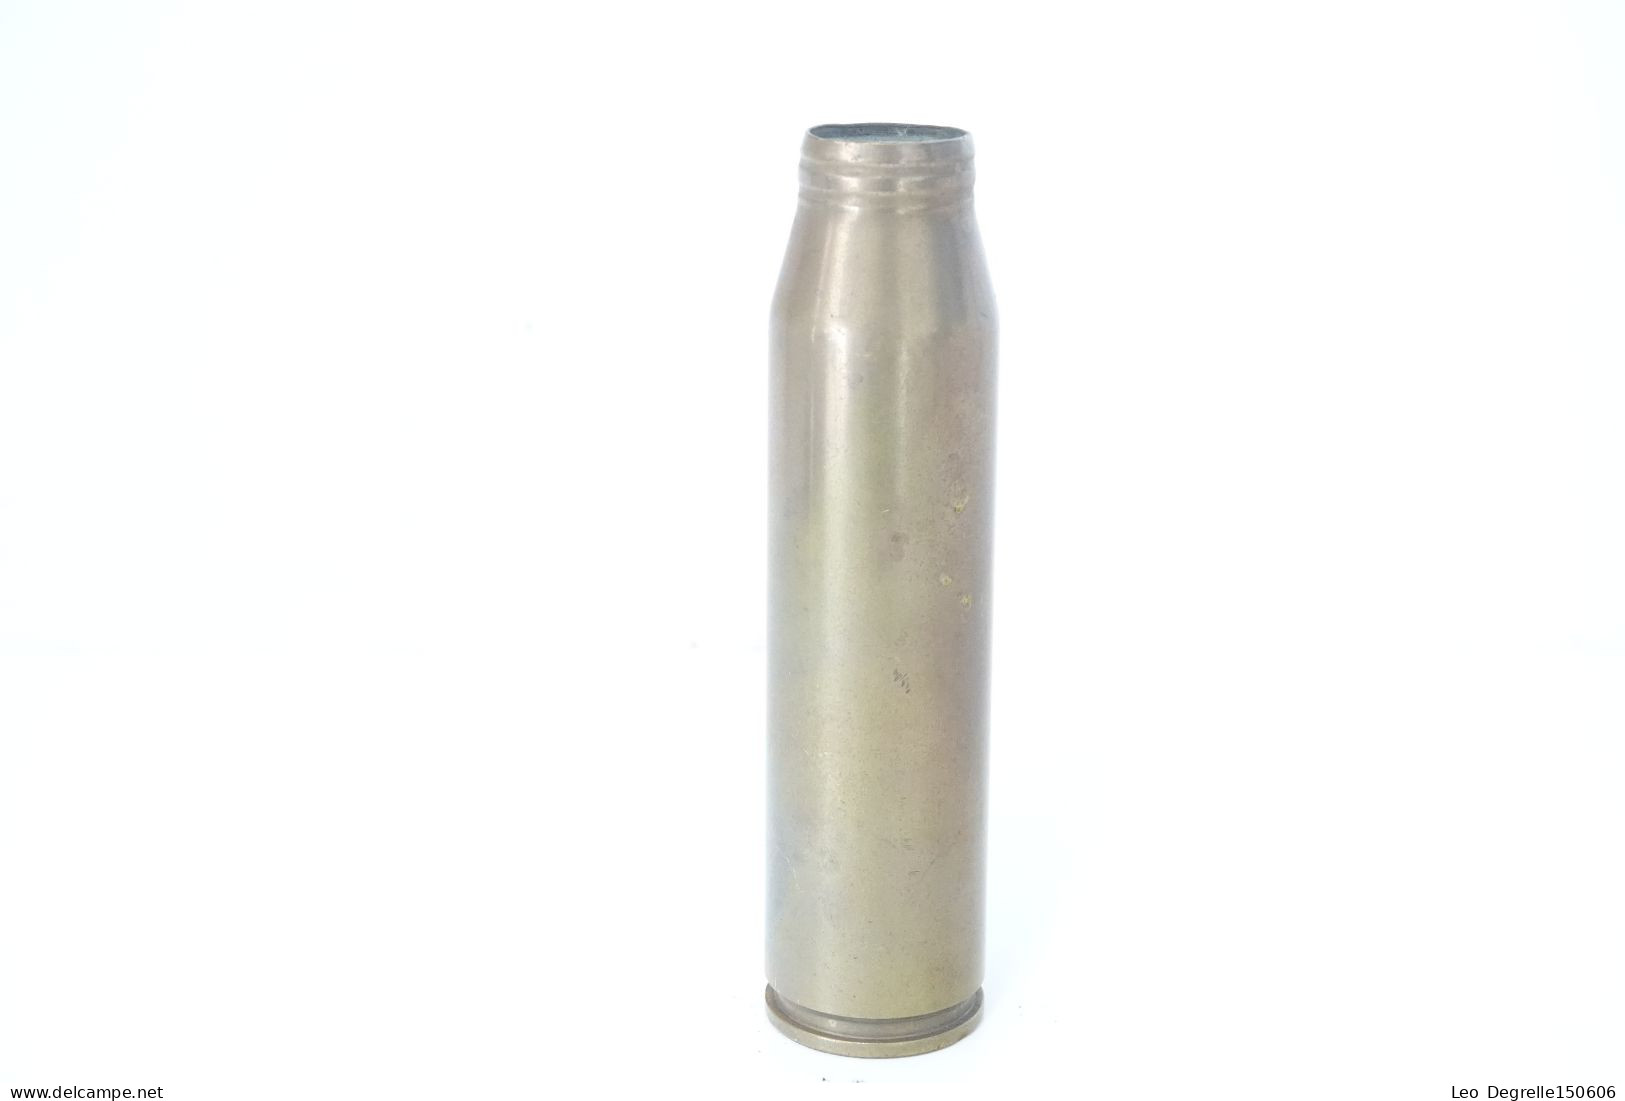 Militaria - Ammunition : Original French 30mm Rarden Round 831A - WW2 1973 - Weapon Ammo Deactivated Shell - L = 17 - Sammlerwaffen